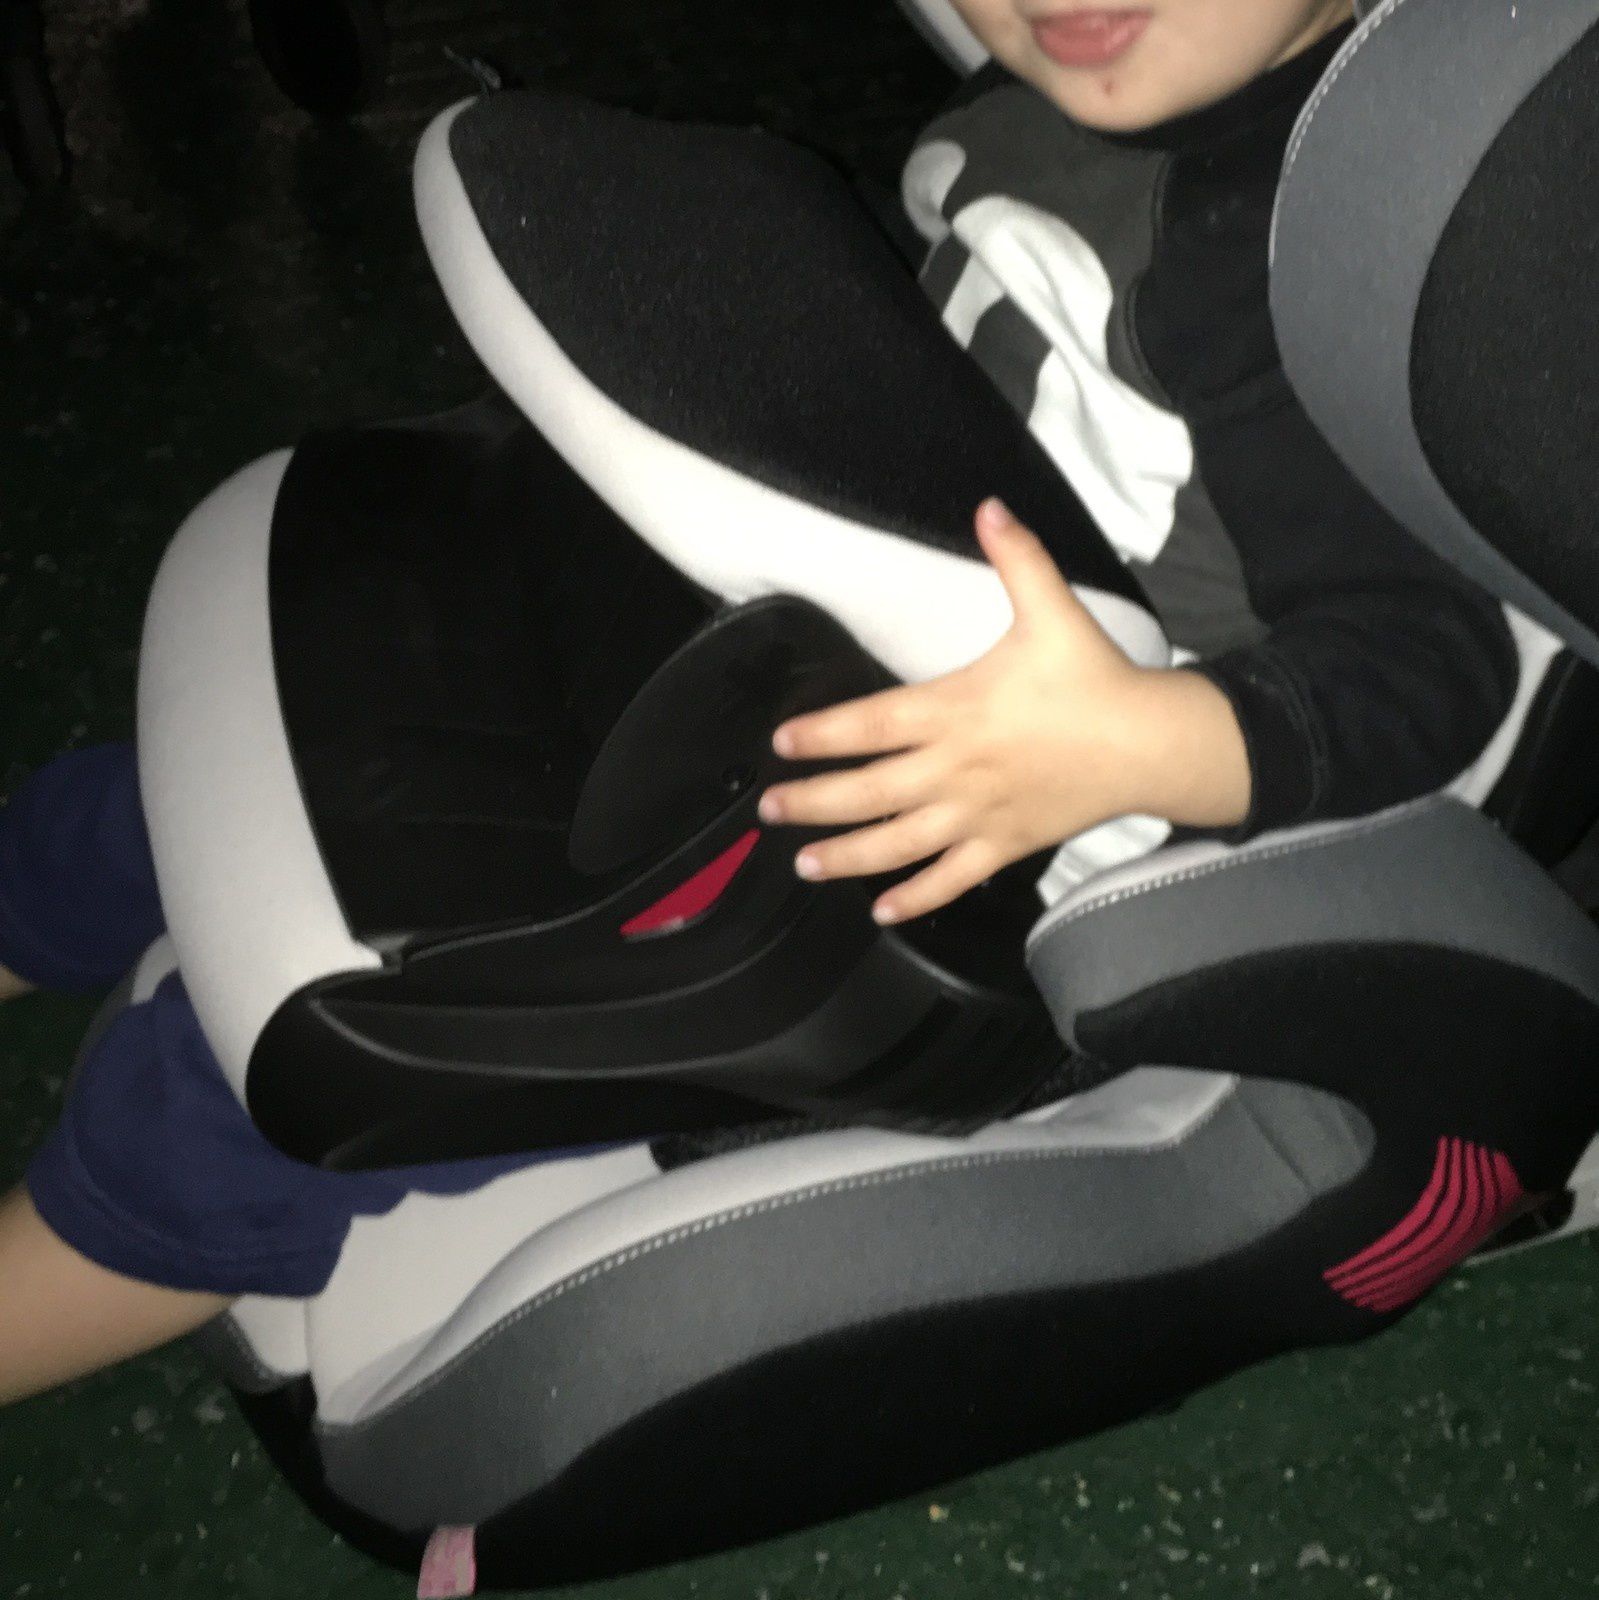 KIDDY Phoenixfix Pro 2 sièges auto pour enfant, avec bouclier d'impact,  Isofix groupe 1 (9–18 kg, de 9 mois à 4 ans environ) : : Bébé  et Puériculture